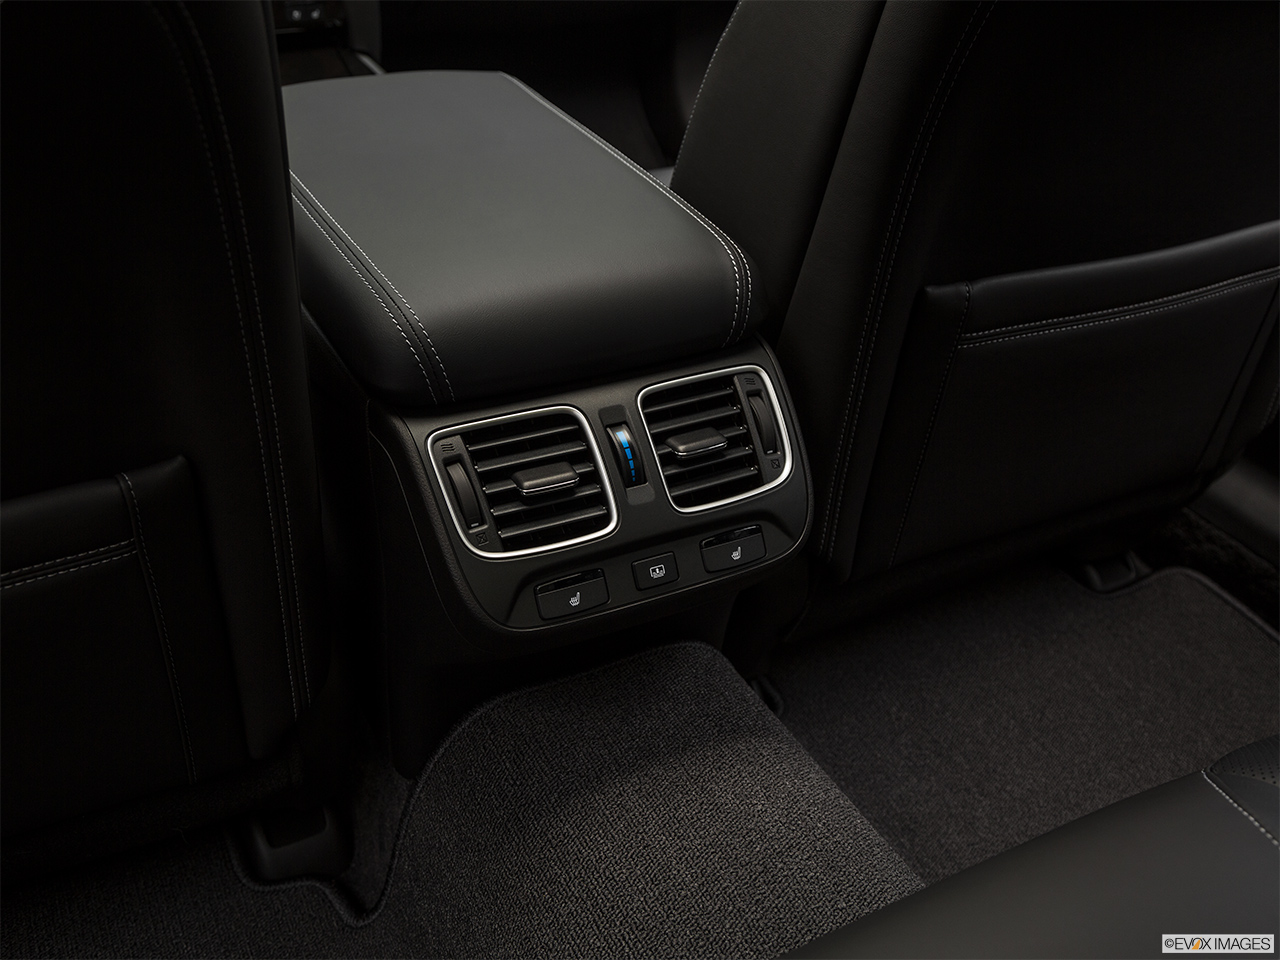 2020 Acura RLX Sport Hybrid SH-AWD Rear A/C controls. 